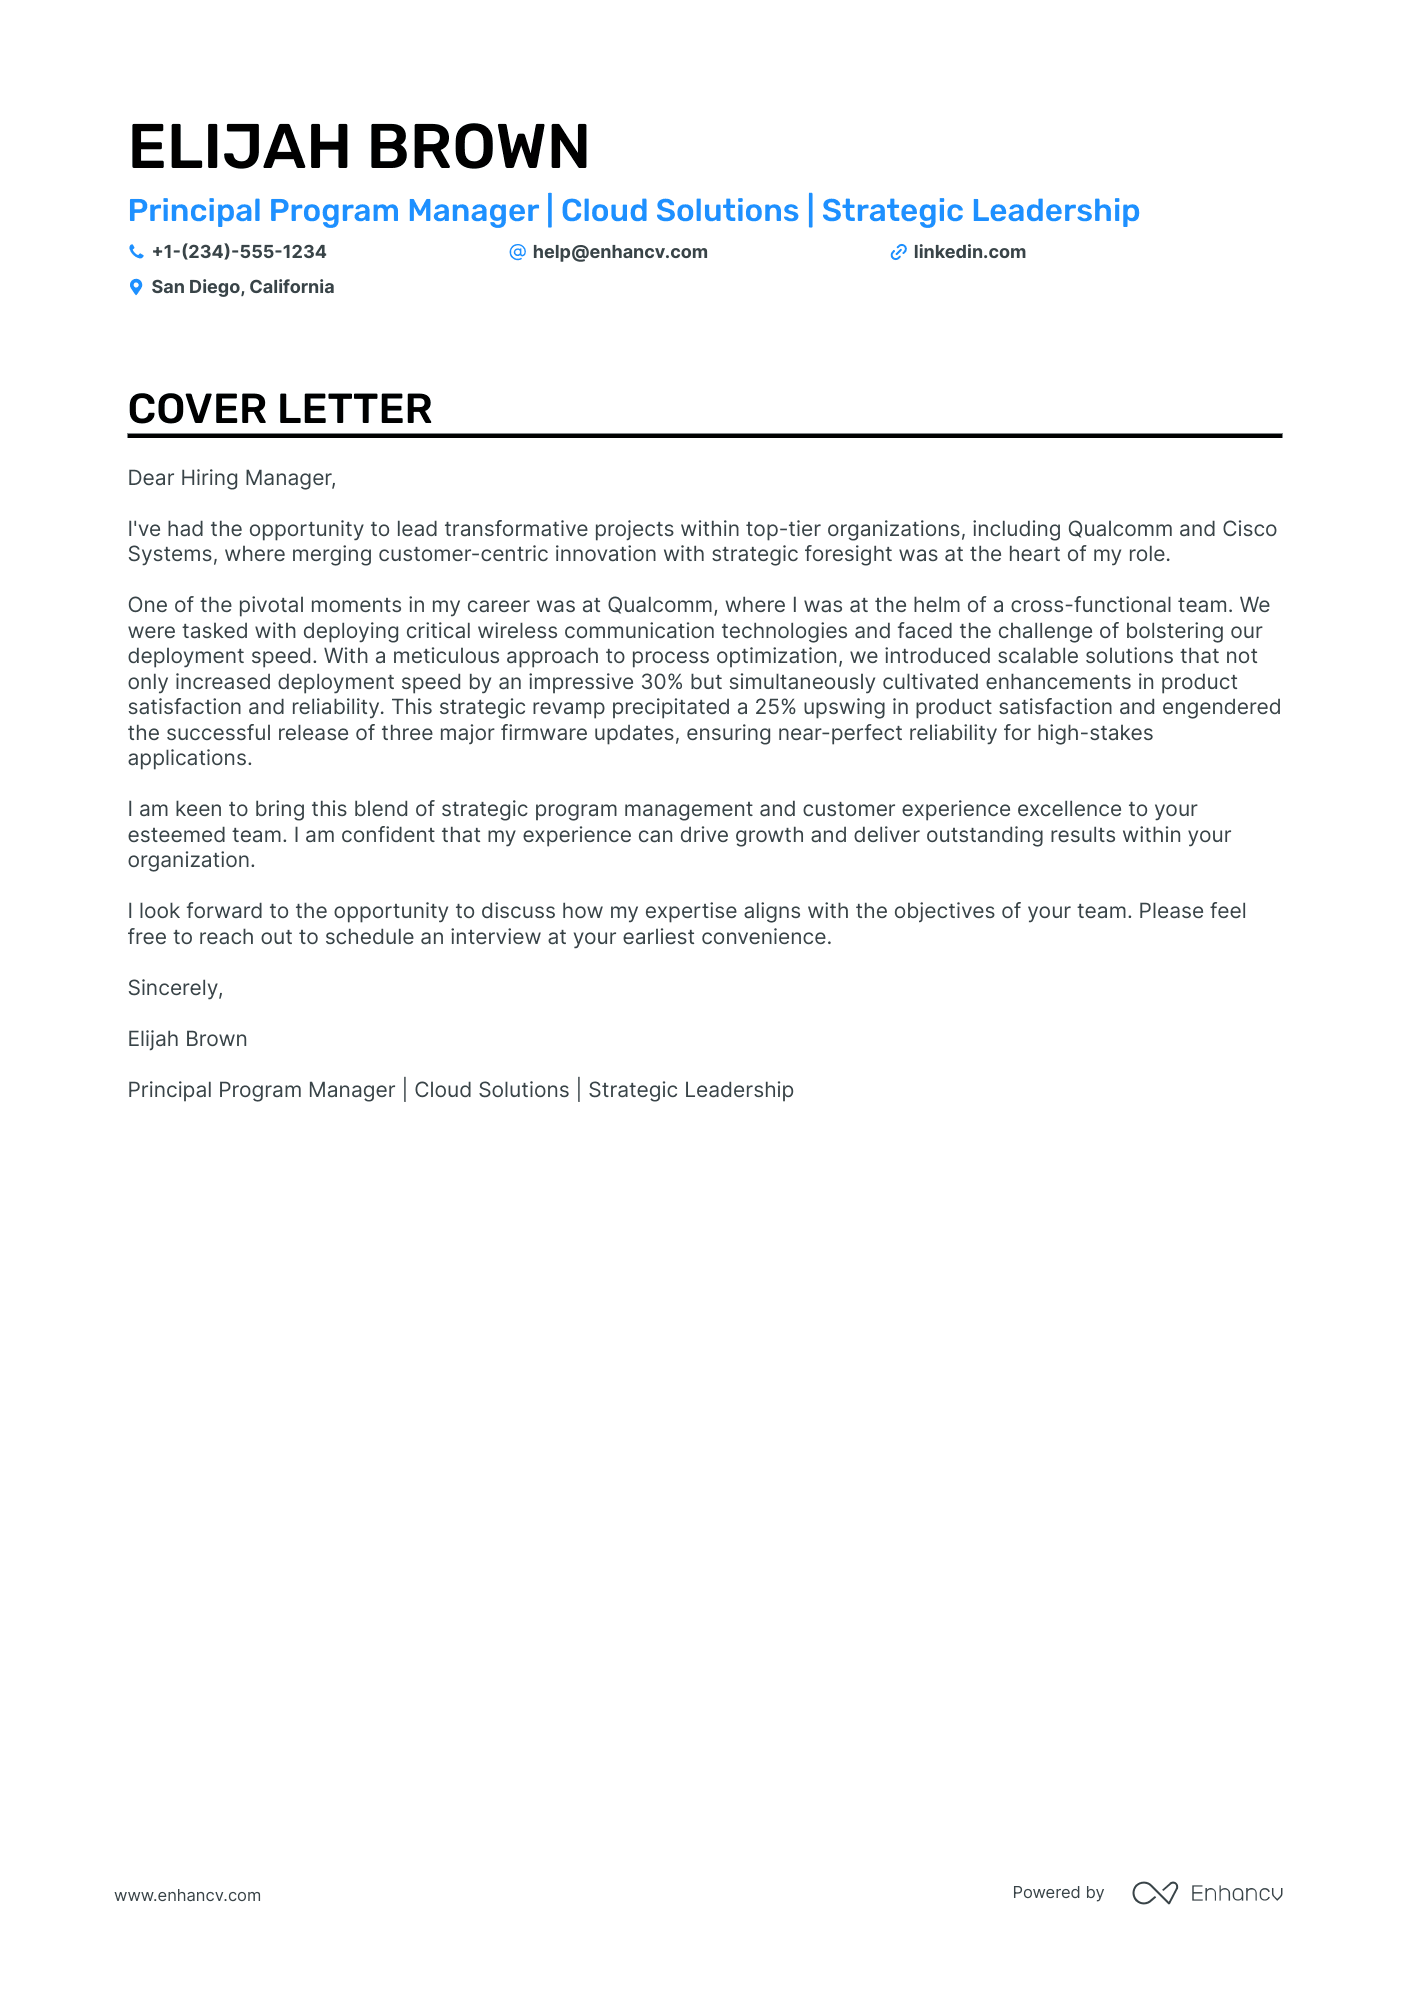 Microsoft Program Manager cover letter